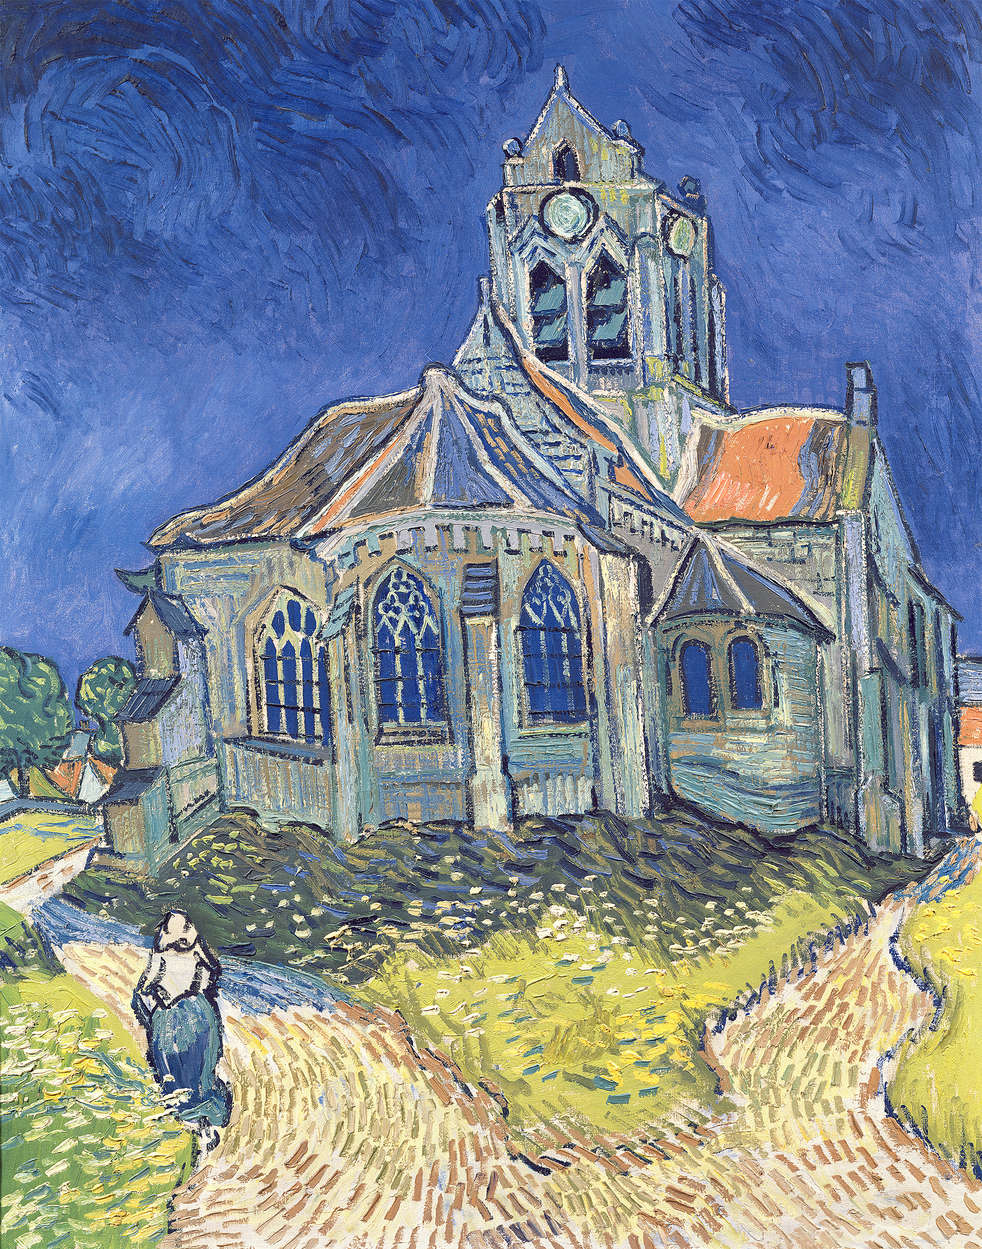             Fototapete "Die Kirche in Auvers" von Vincent van Gogh
        